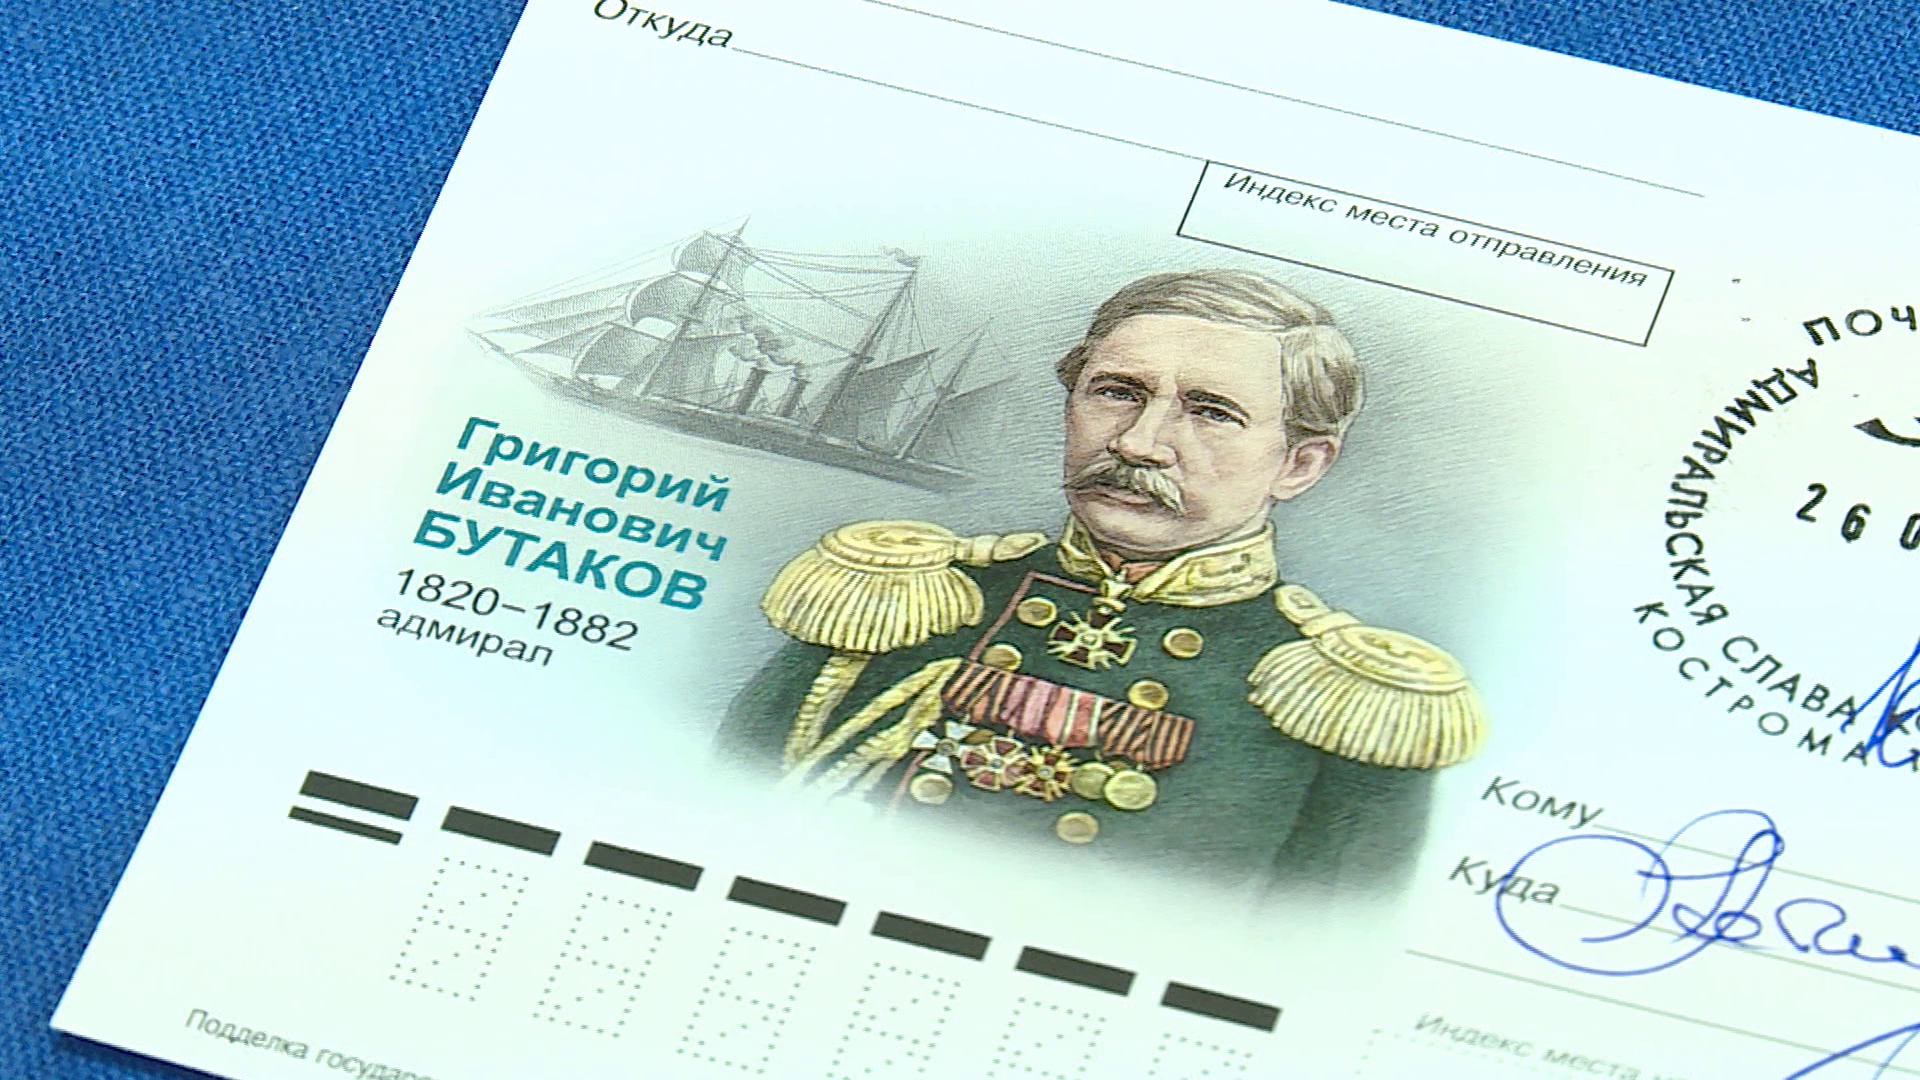 Образ прославленного костромского моряка украсил почтовую карточку